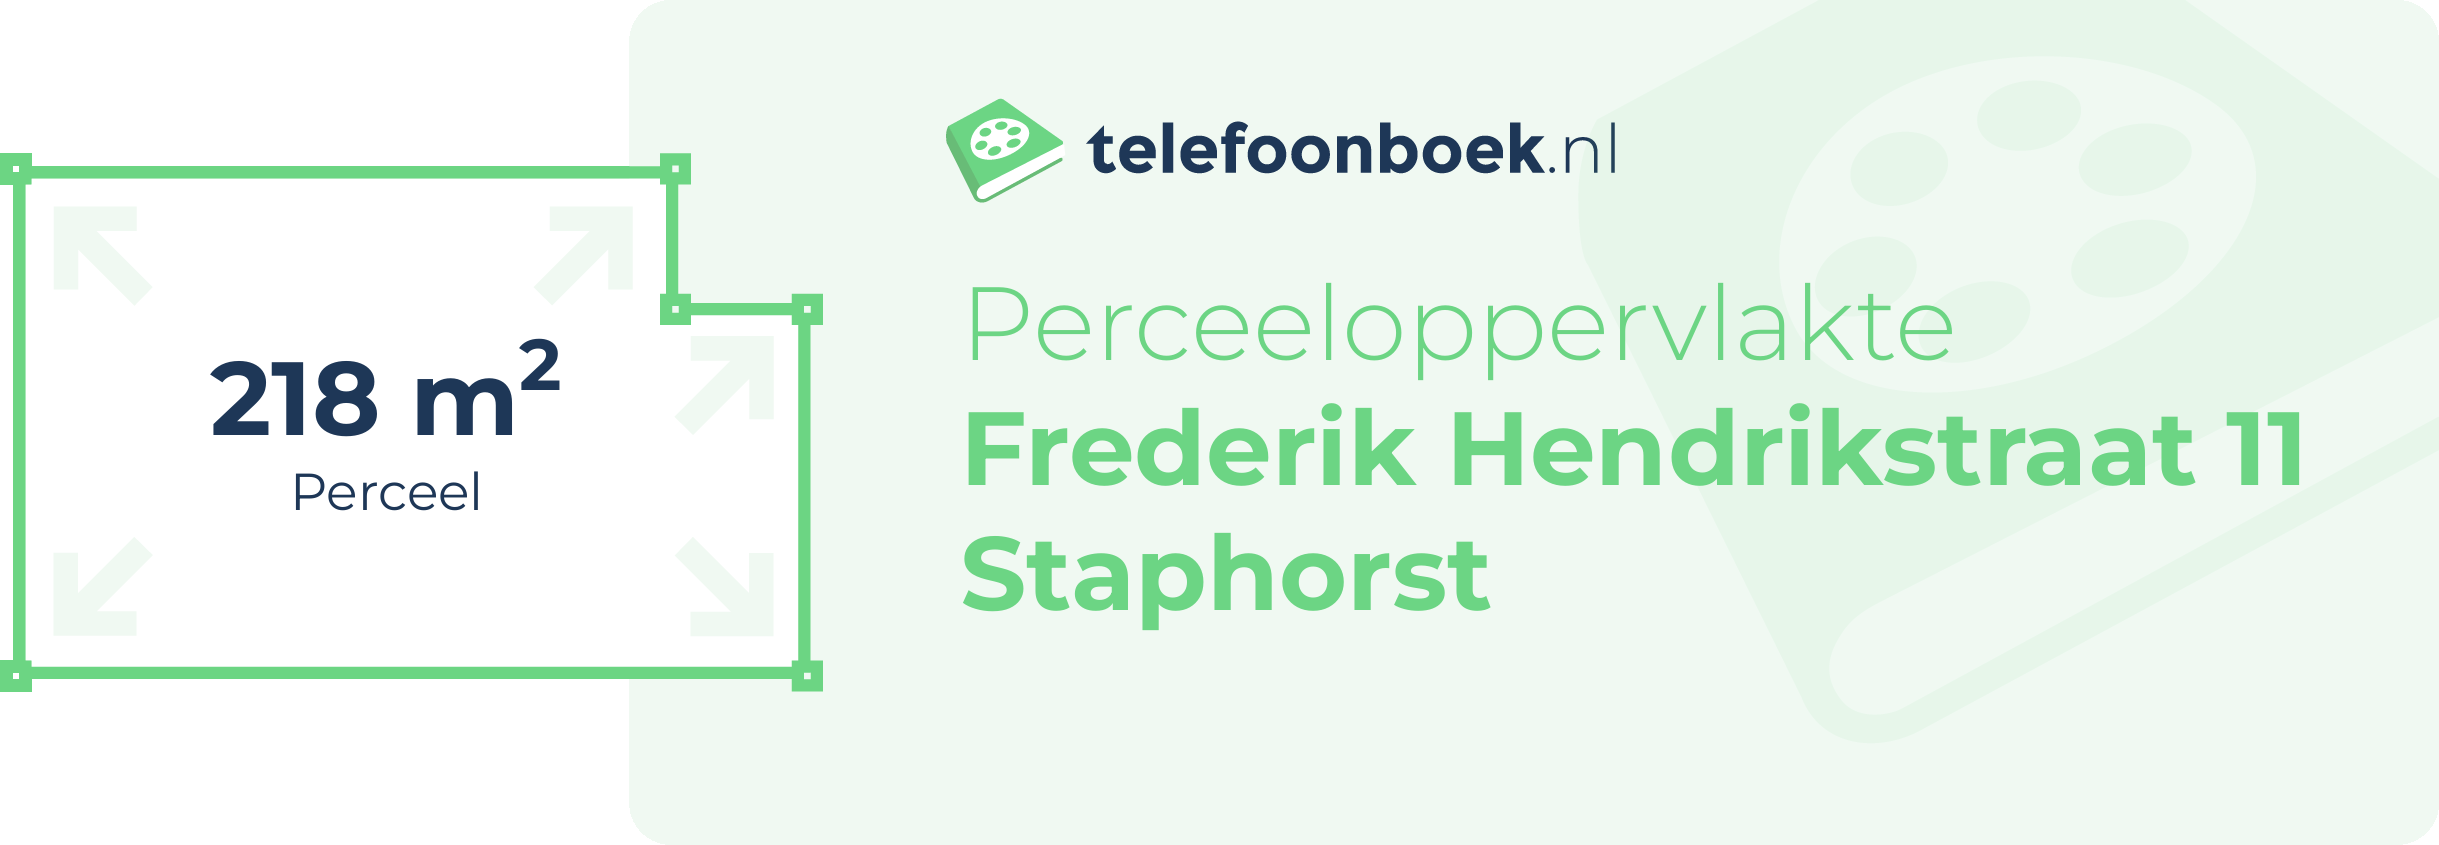 Perceeloppervlakte Frederik Hendrikstraat 11 Staphorst